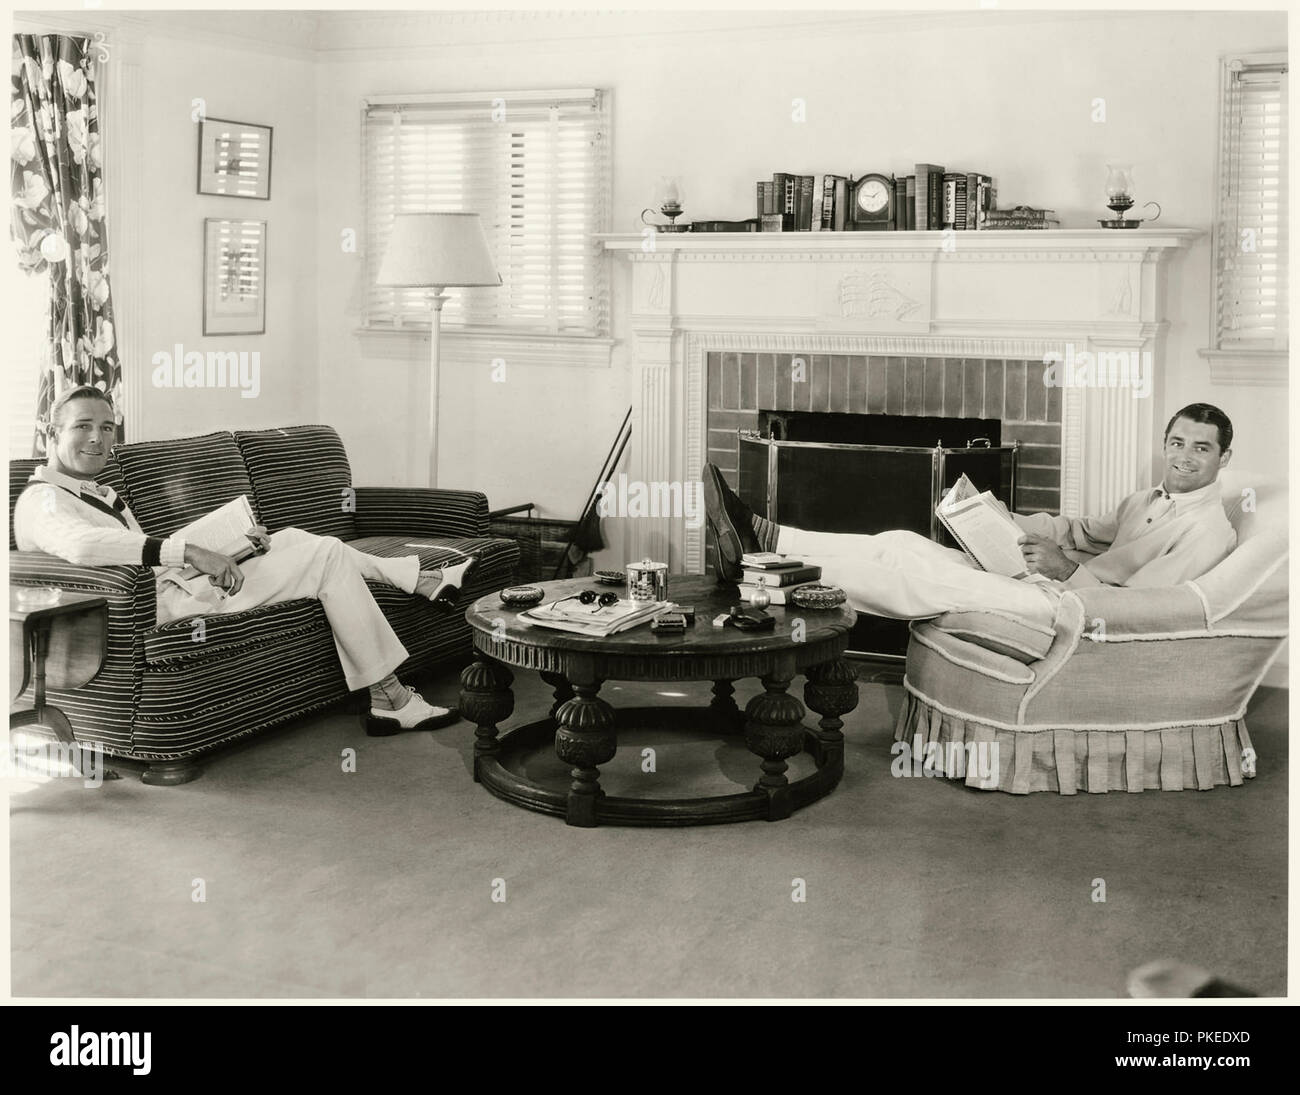 Cary Grant und Randolph Scott entspannen in Ihrem Haus bekannt als "Bachelor" in Santa Monica, Kalifornien, die Sie gekauft und für 12 Jahre nach dem Treffen auf dem Set von heissen Samstag geteilt (1932). Stockfoto